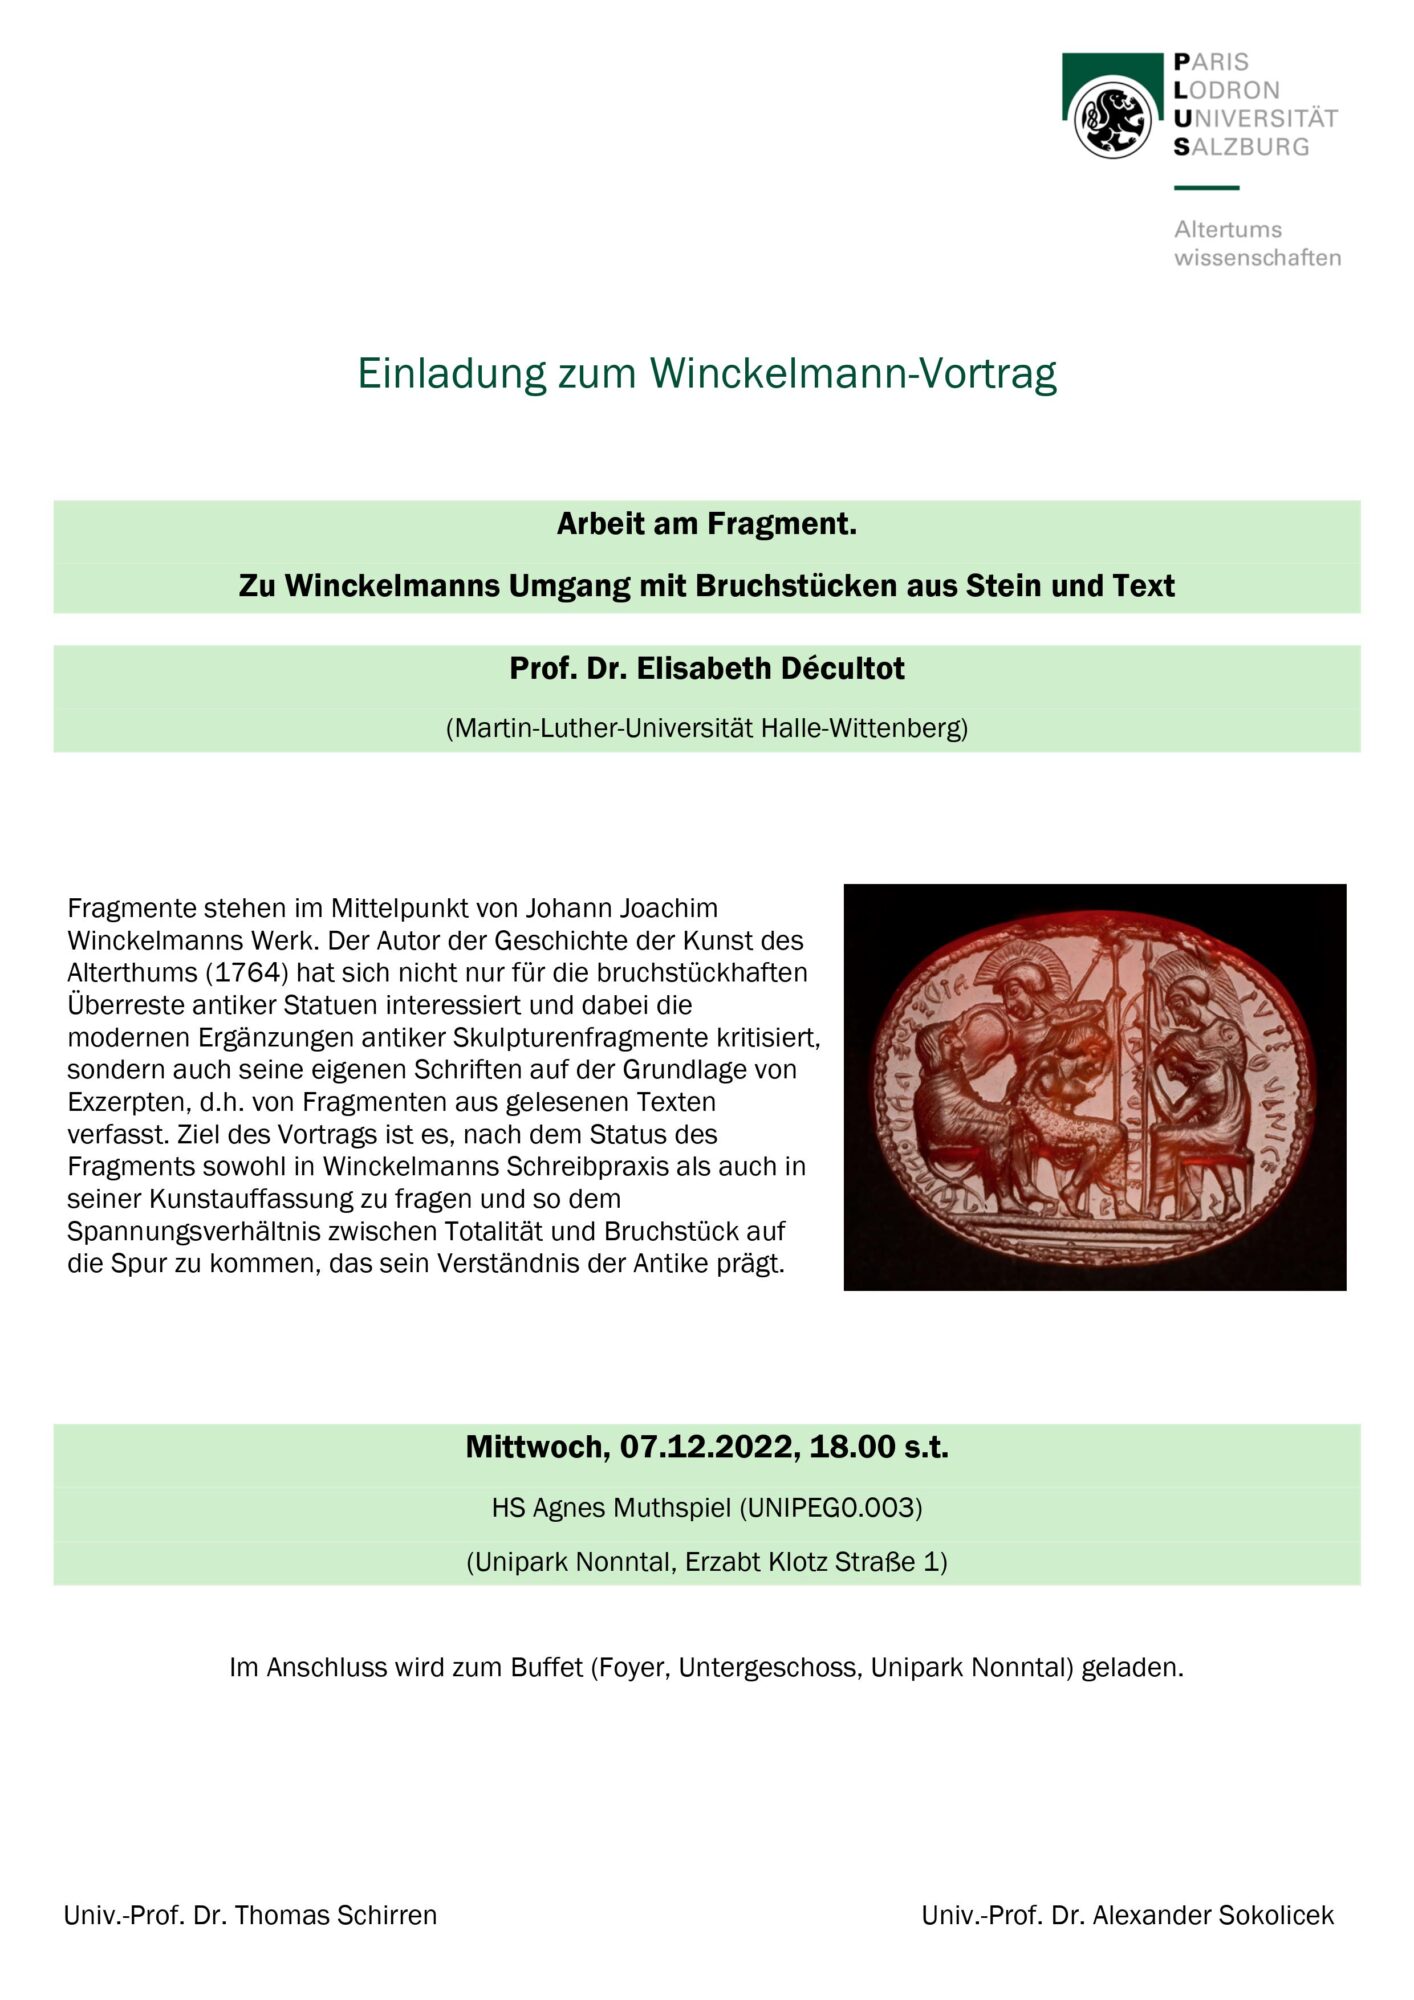 Winckelmann-Vortrag 2022